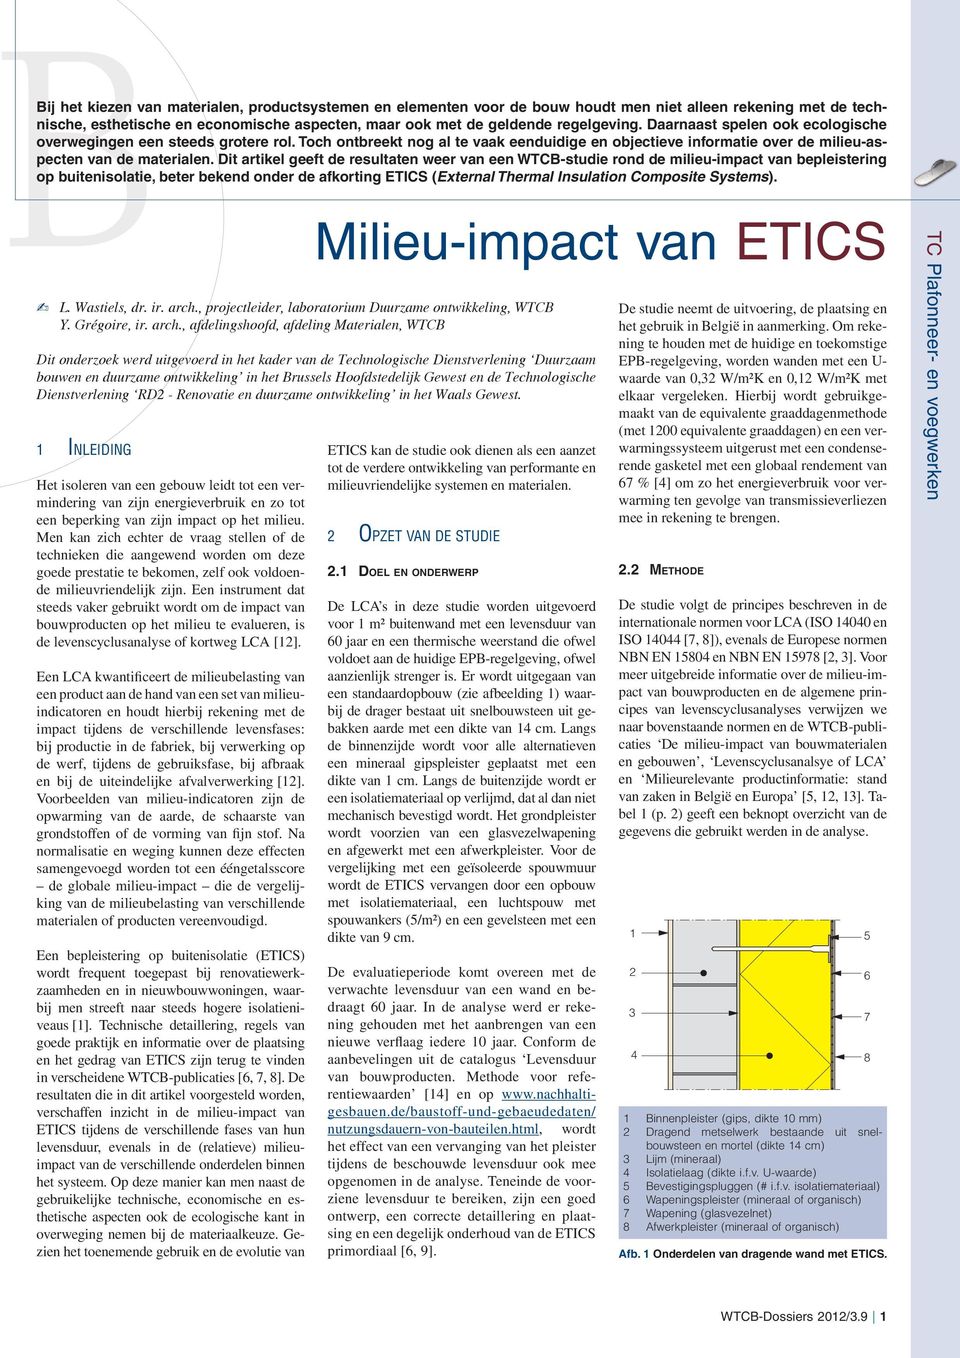 Dit artikel geeft de resultaten weer van een WTCB-studie rond de milieu-impact van bepleistering op buitenisolatie, beter bekend onder de afkorting ETICS (External Thermal Insulation Composite